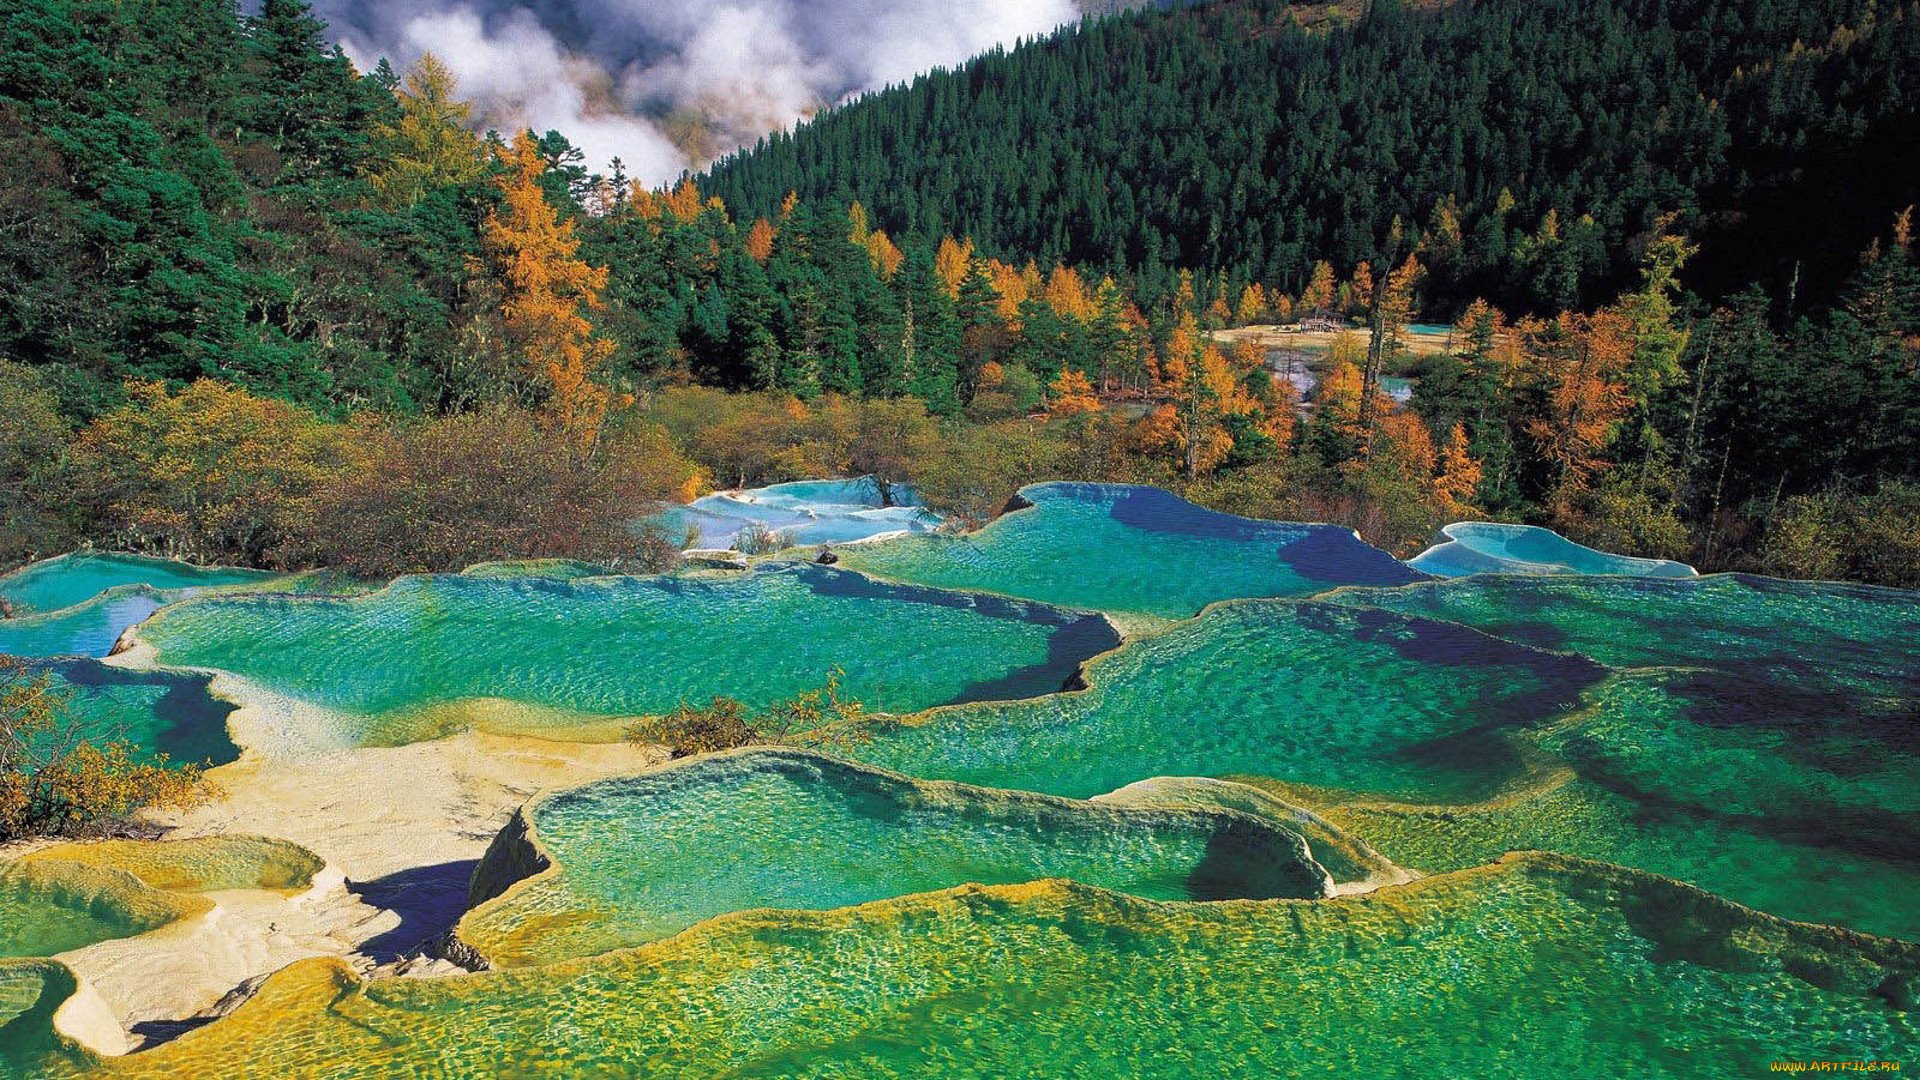 Заповедник в котором есть уникальный водоем. Долина Цзючжайгоу Китай. Национальный парк Хуанлун. Долина Хуанлун Китай. Бирюзовое озеро, национальный парк Цзючжайгоу, Китай.